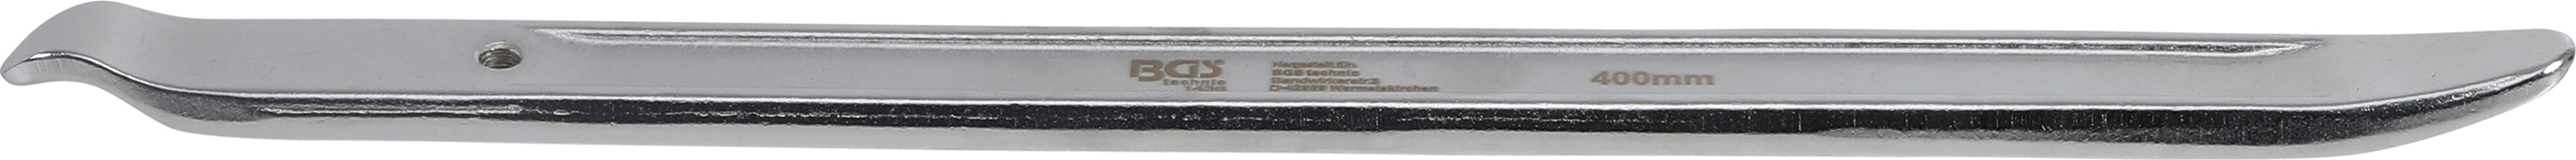 BGS Reifen-Montiereisen | 400 mm